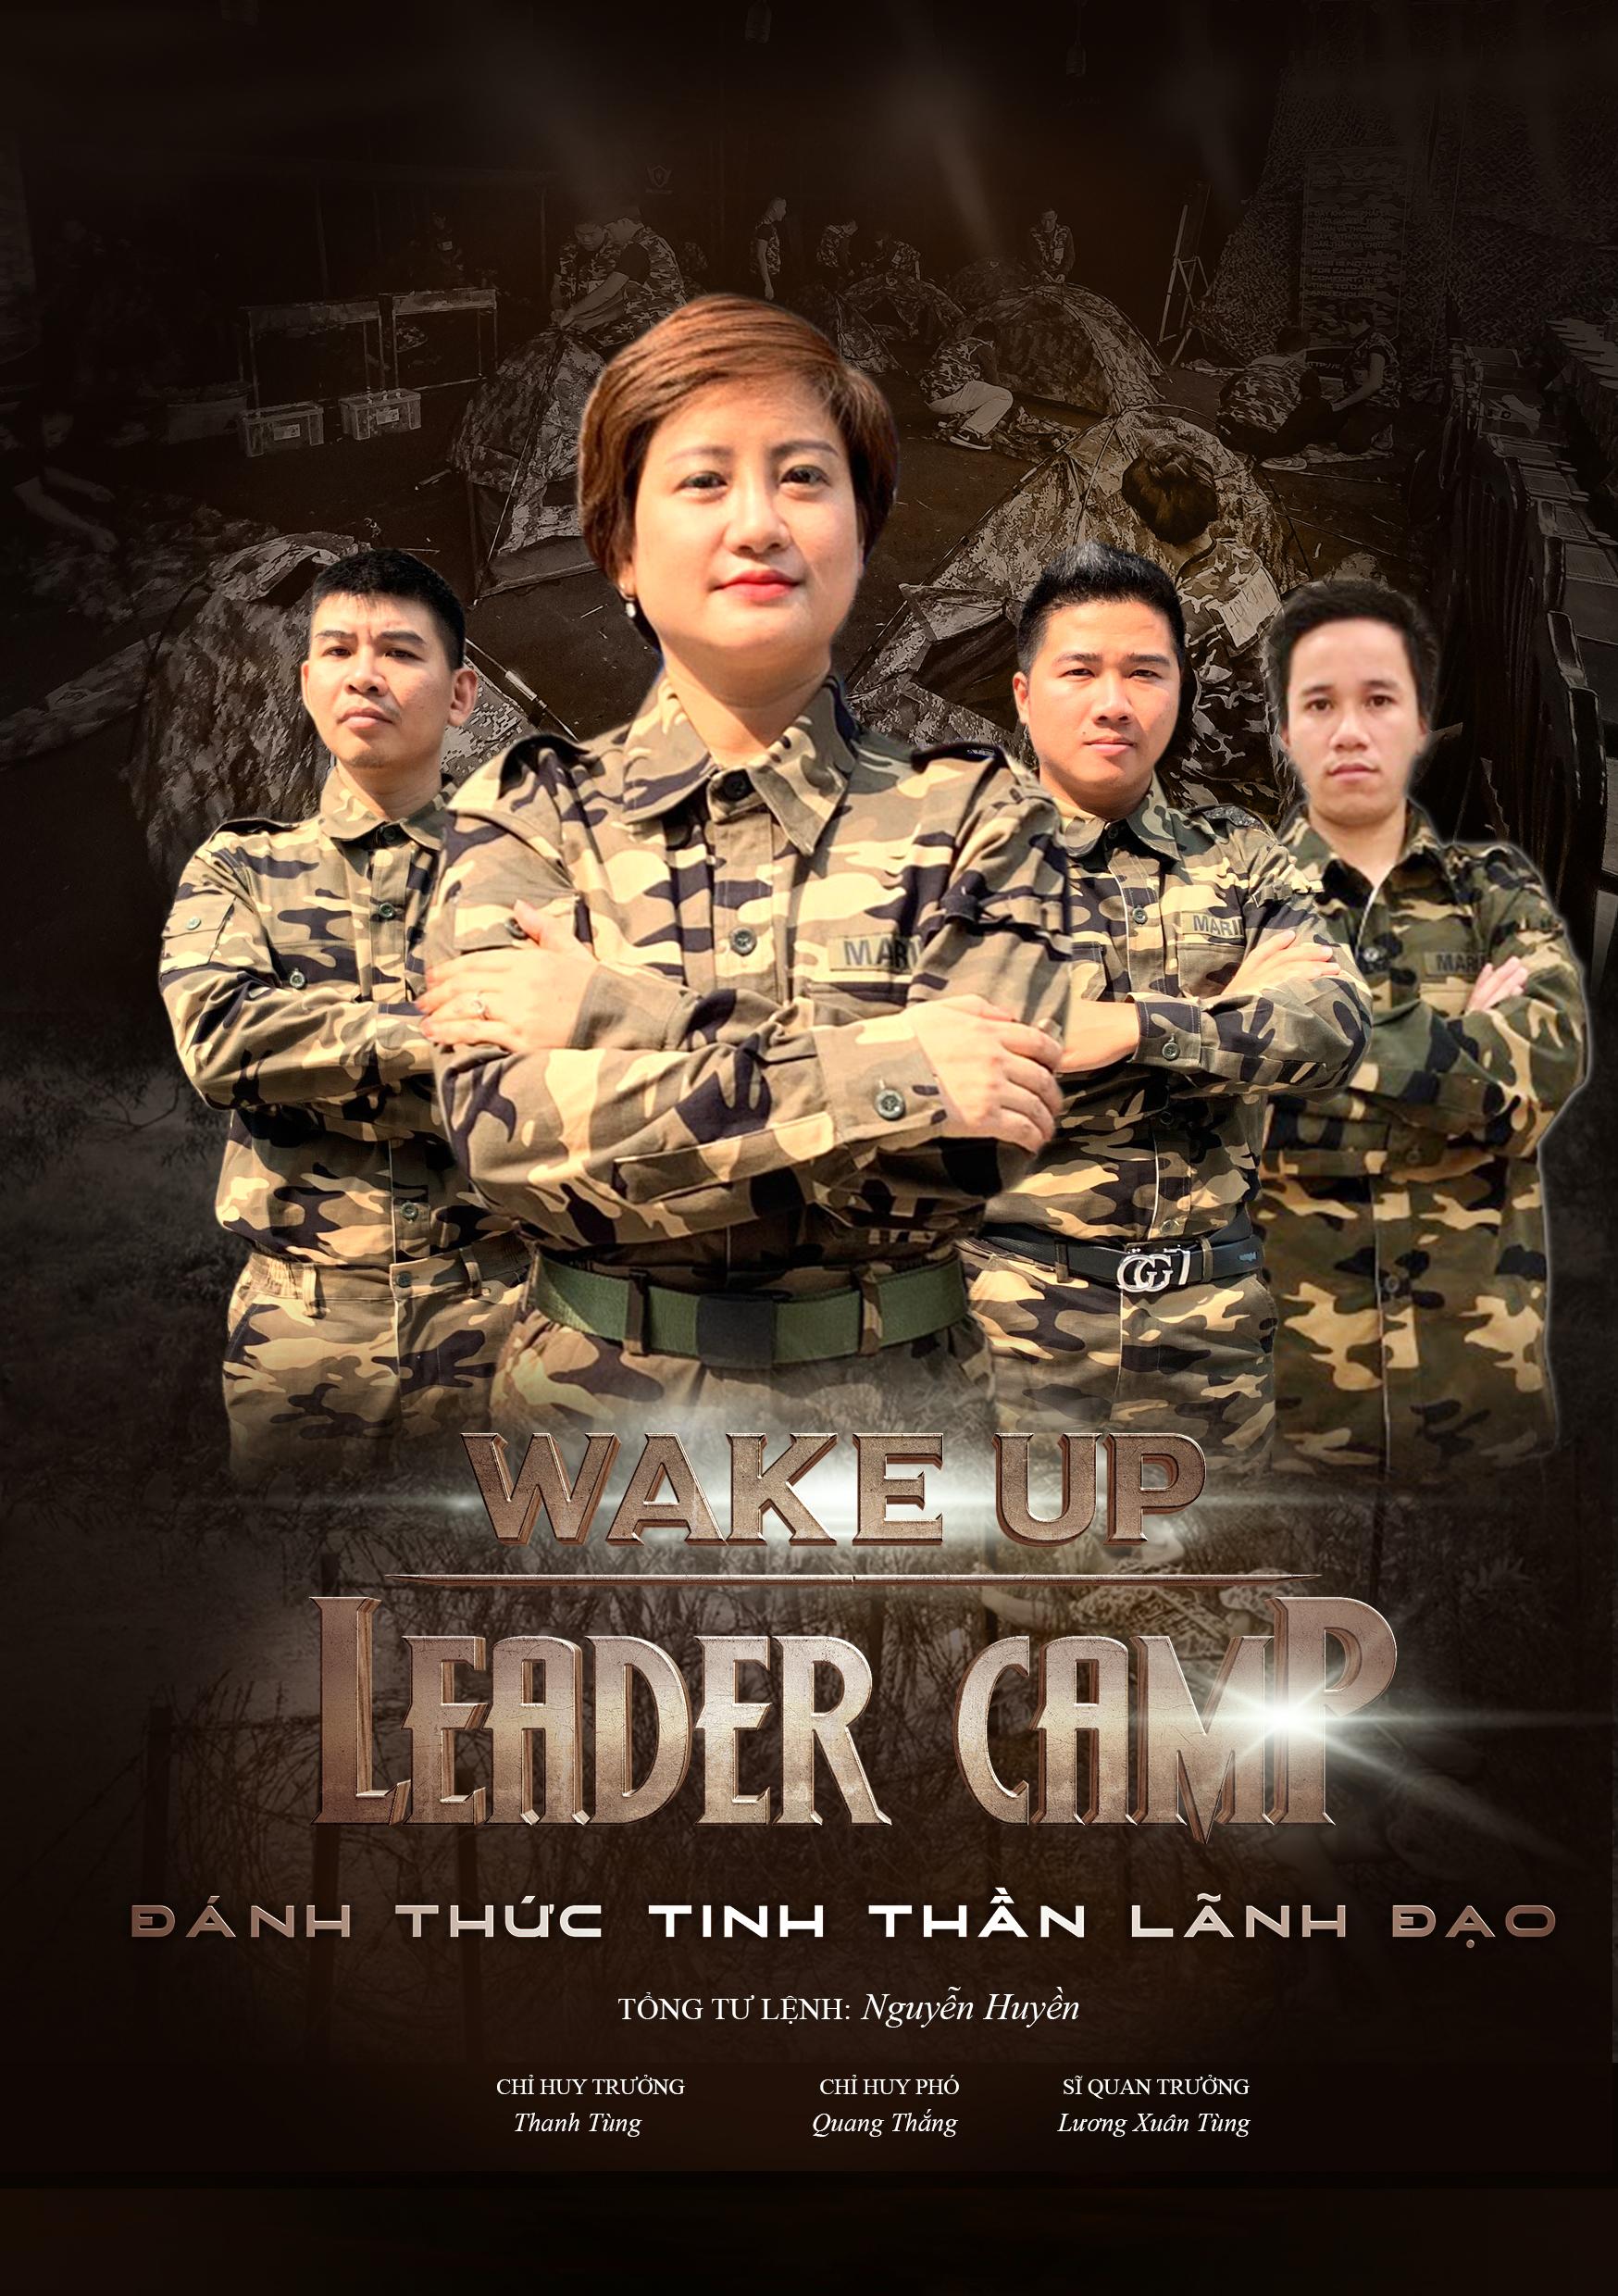 Wake up leader camp: Khóa huấn luyện thực chiến lớn nhất Việt Nam